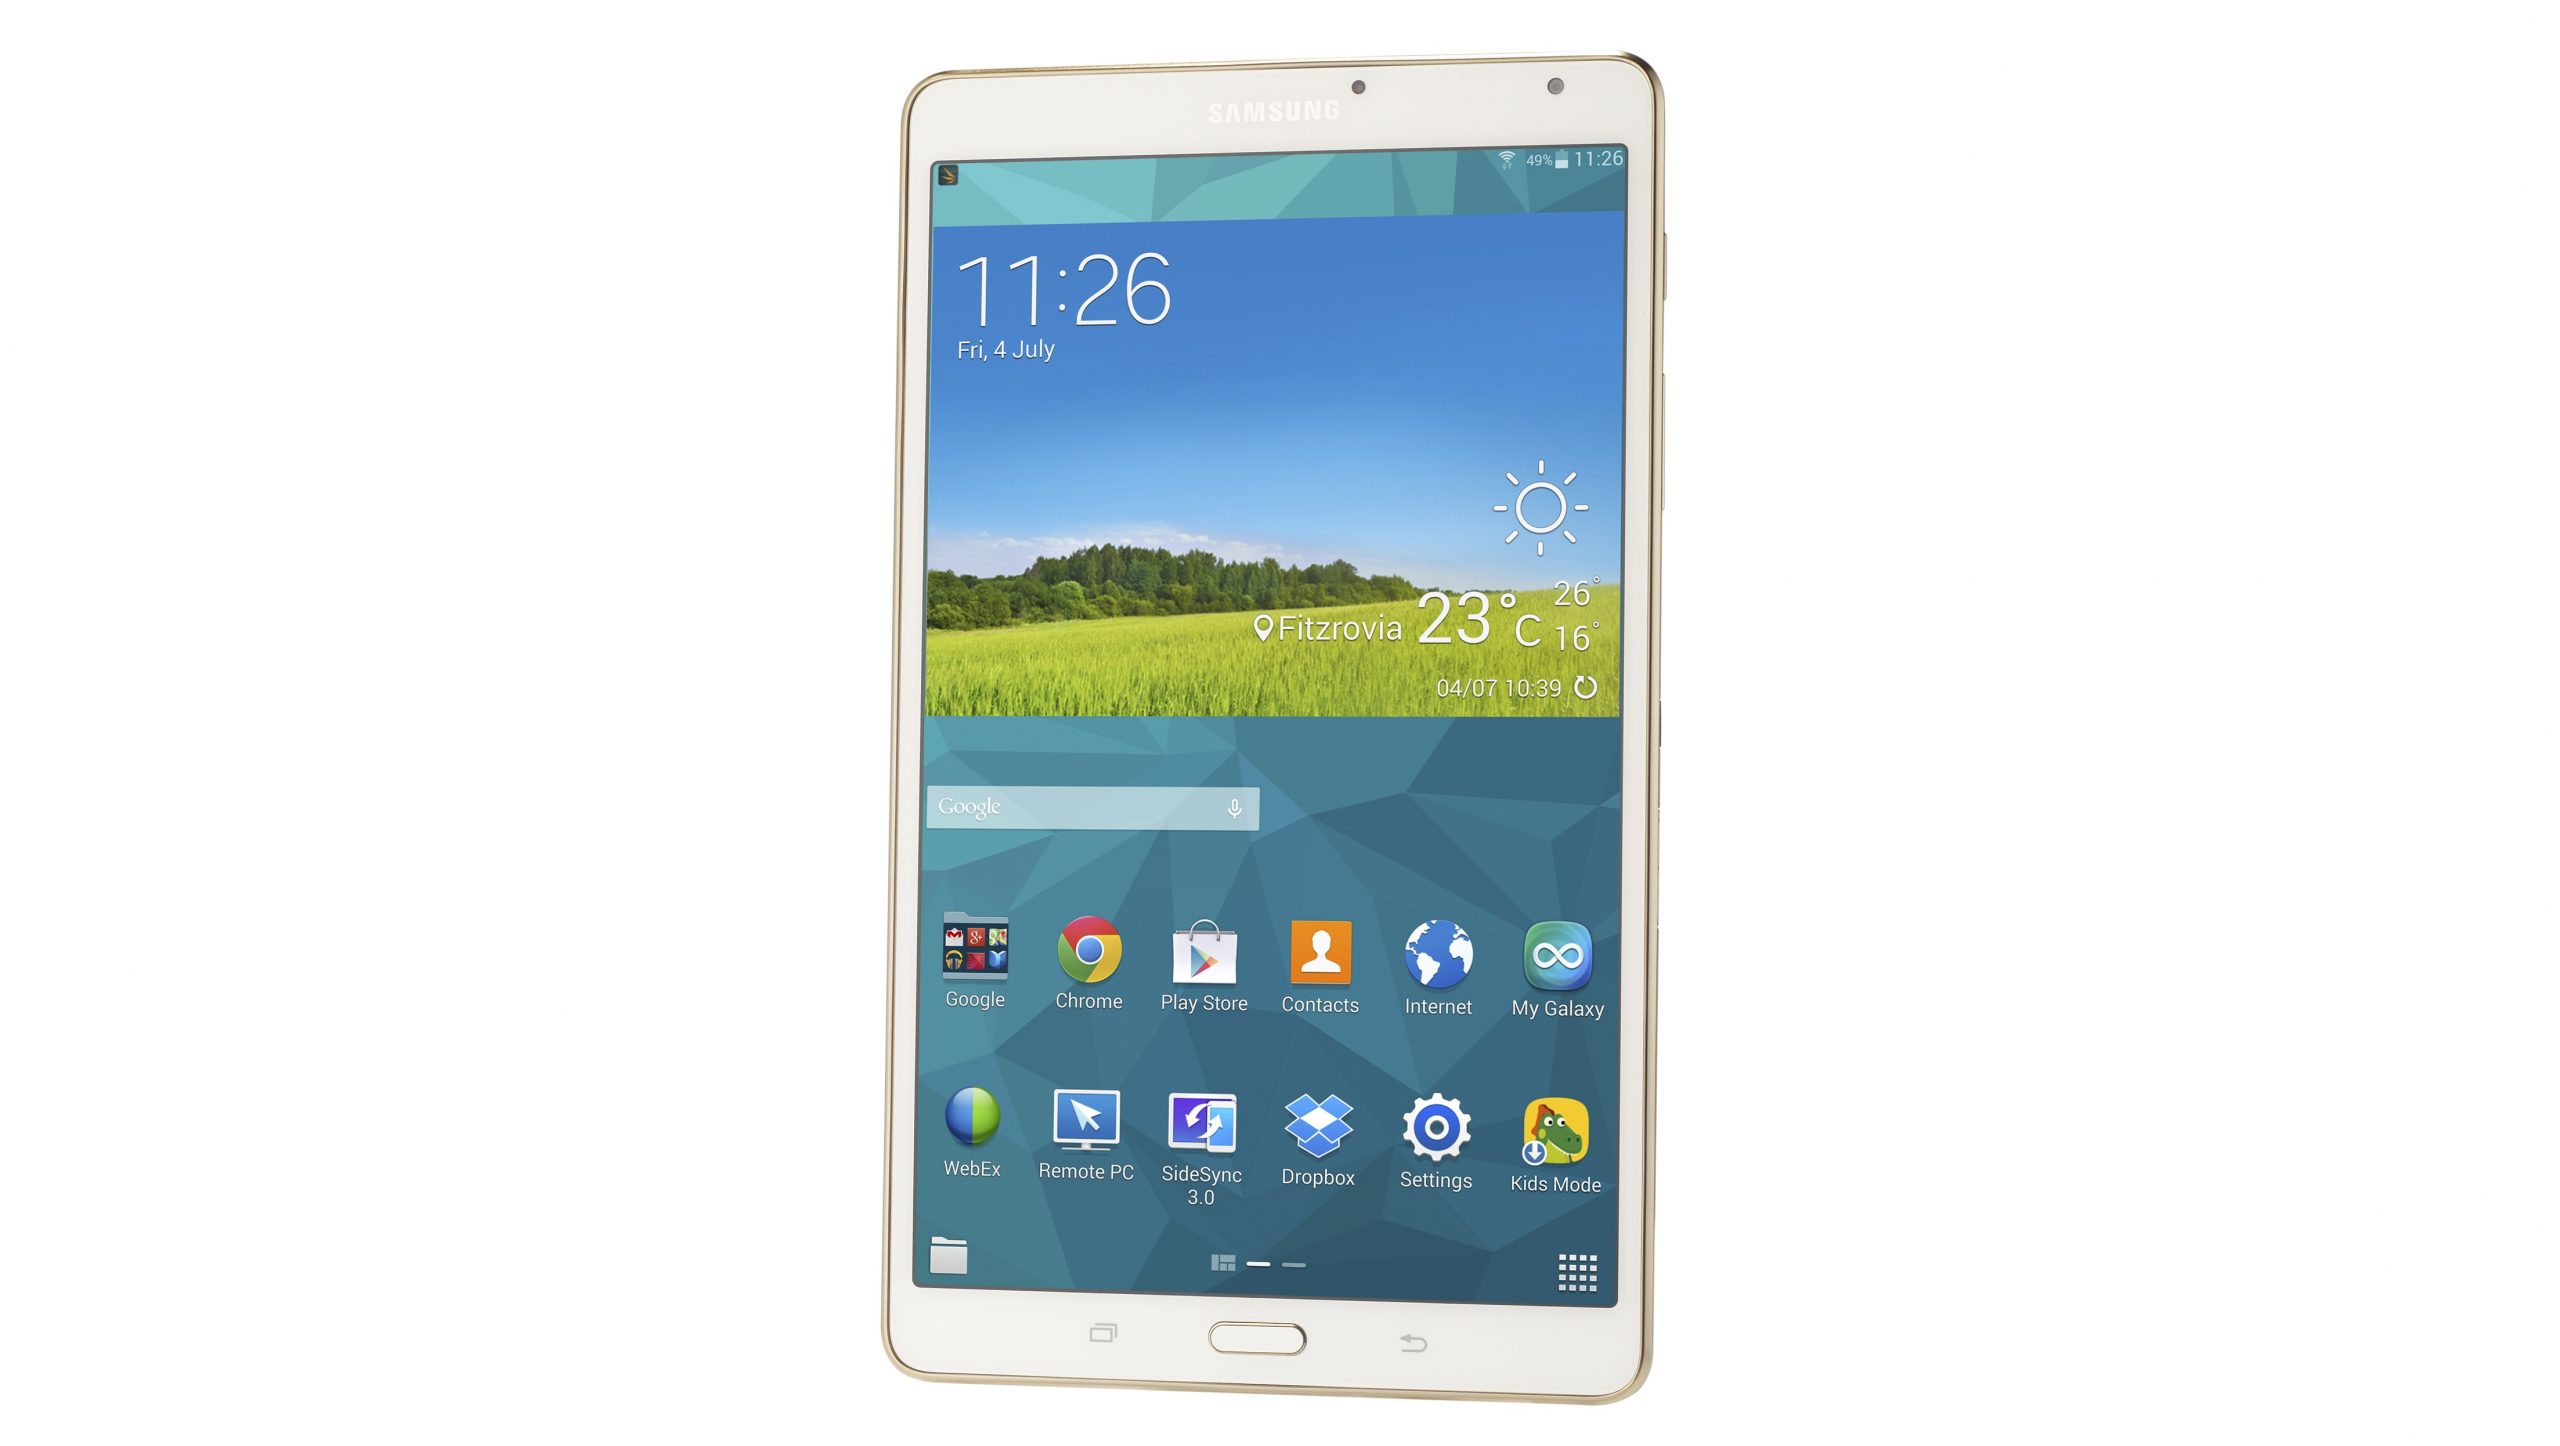 Revisión de Samsung Galaxy Tab S 8.4: sigue siendo una tableta decente